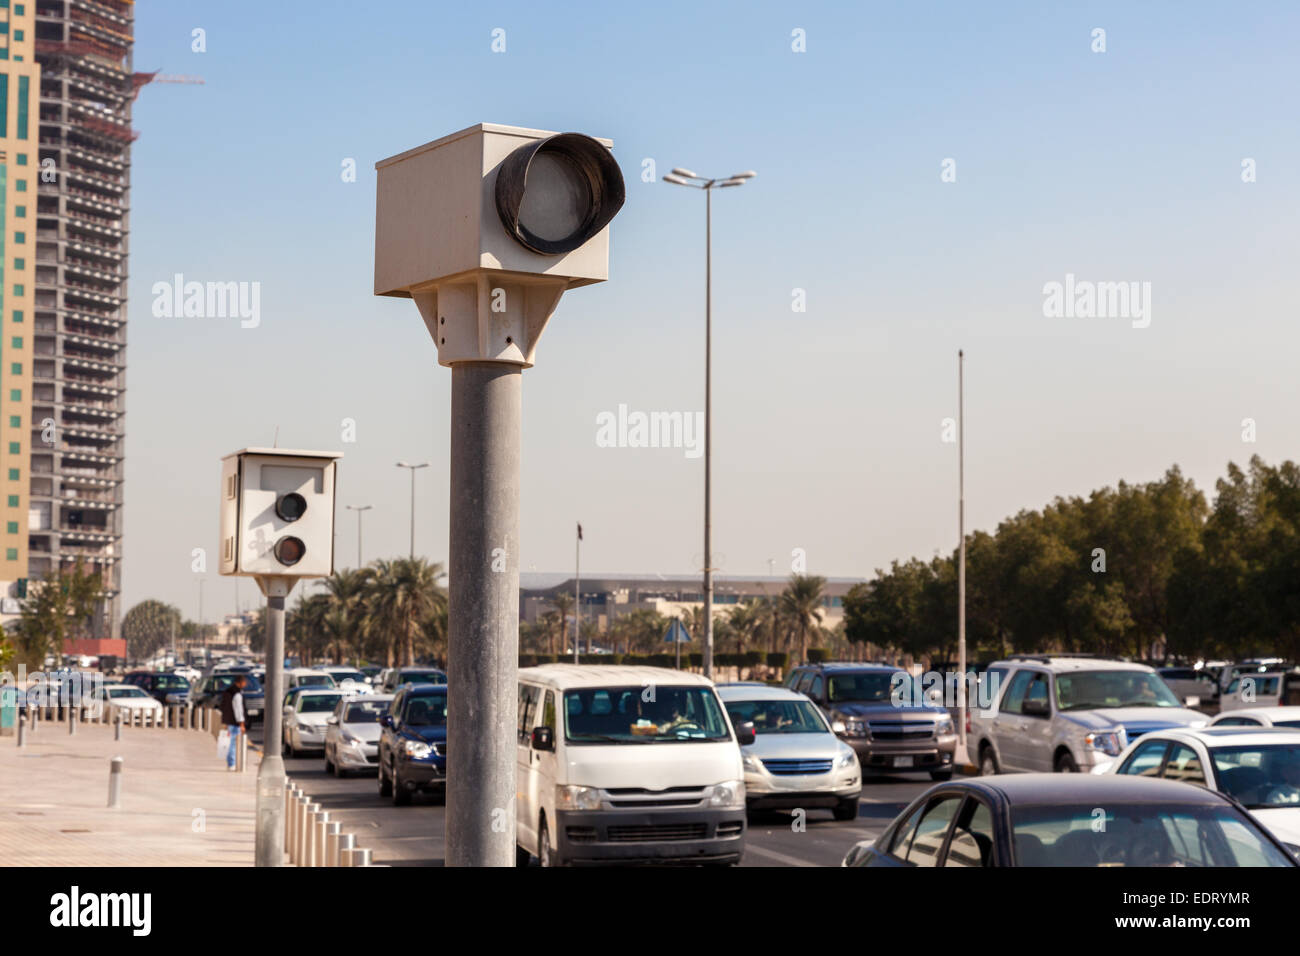 Cámaras de control de velocidad en la ciudad de Kuwait, Oriente Medio Foto de stock